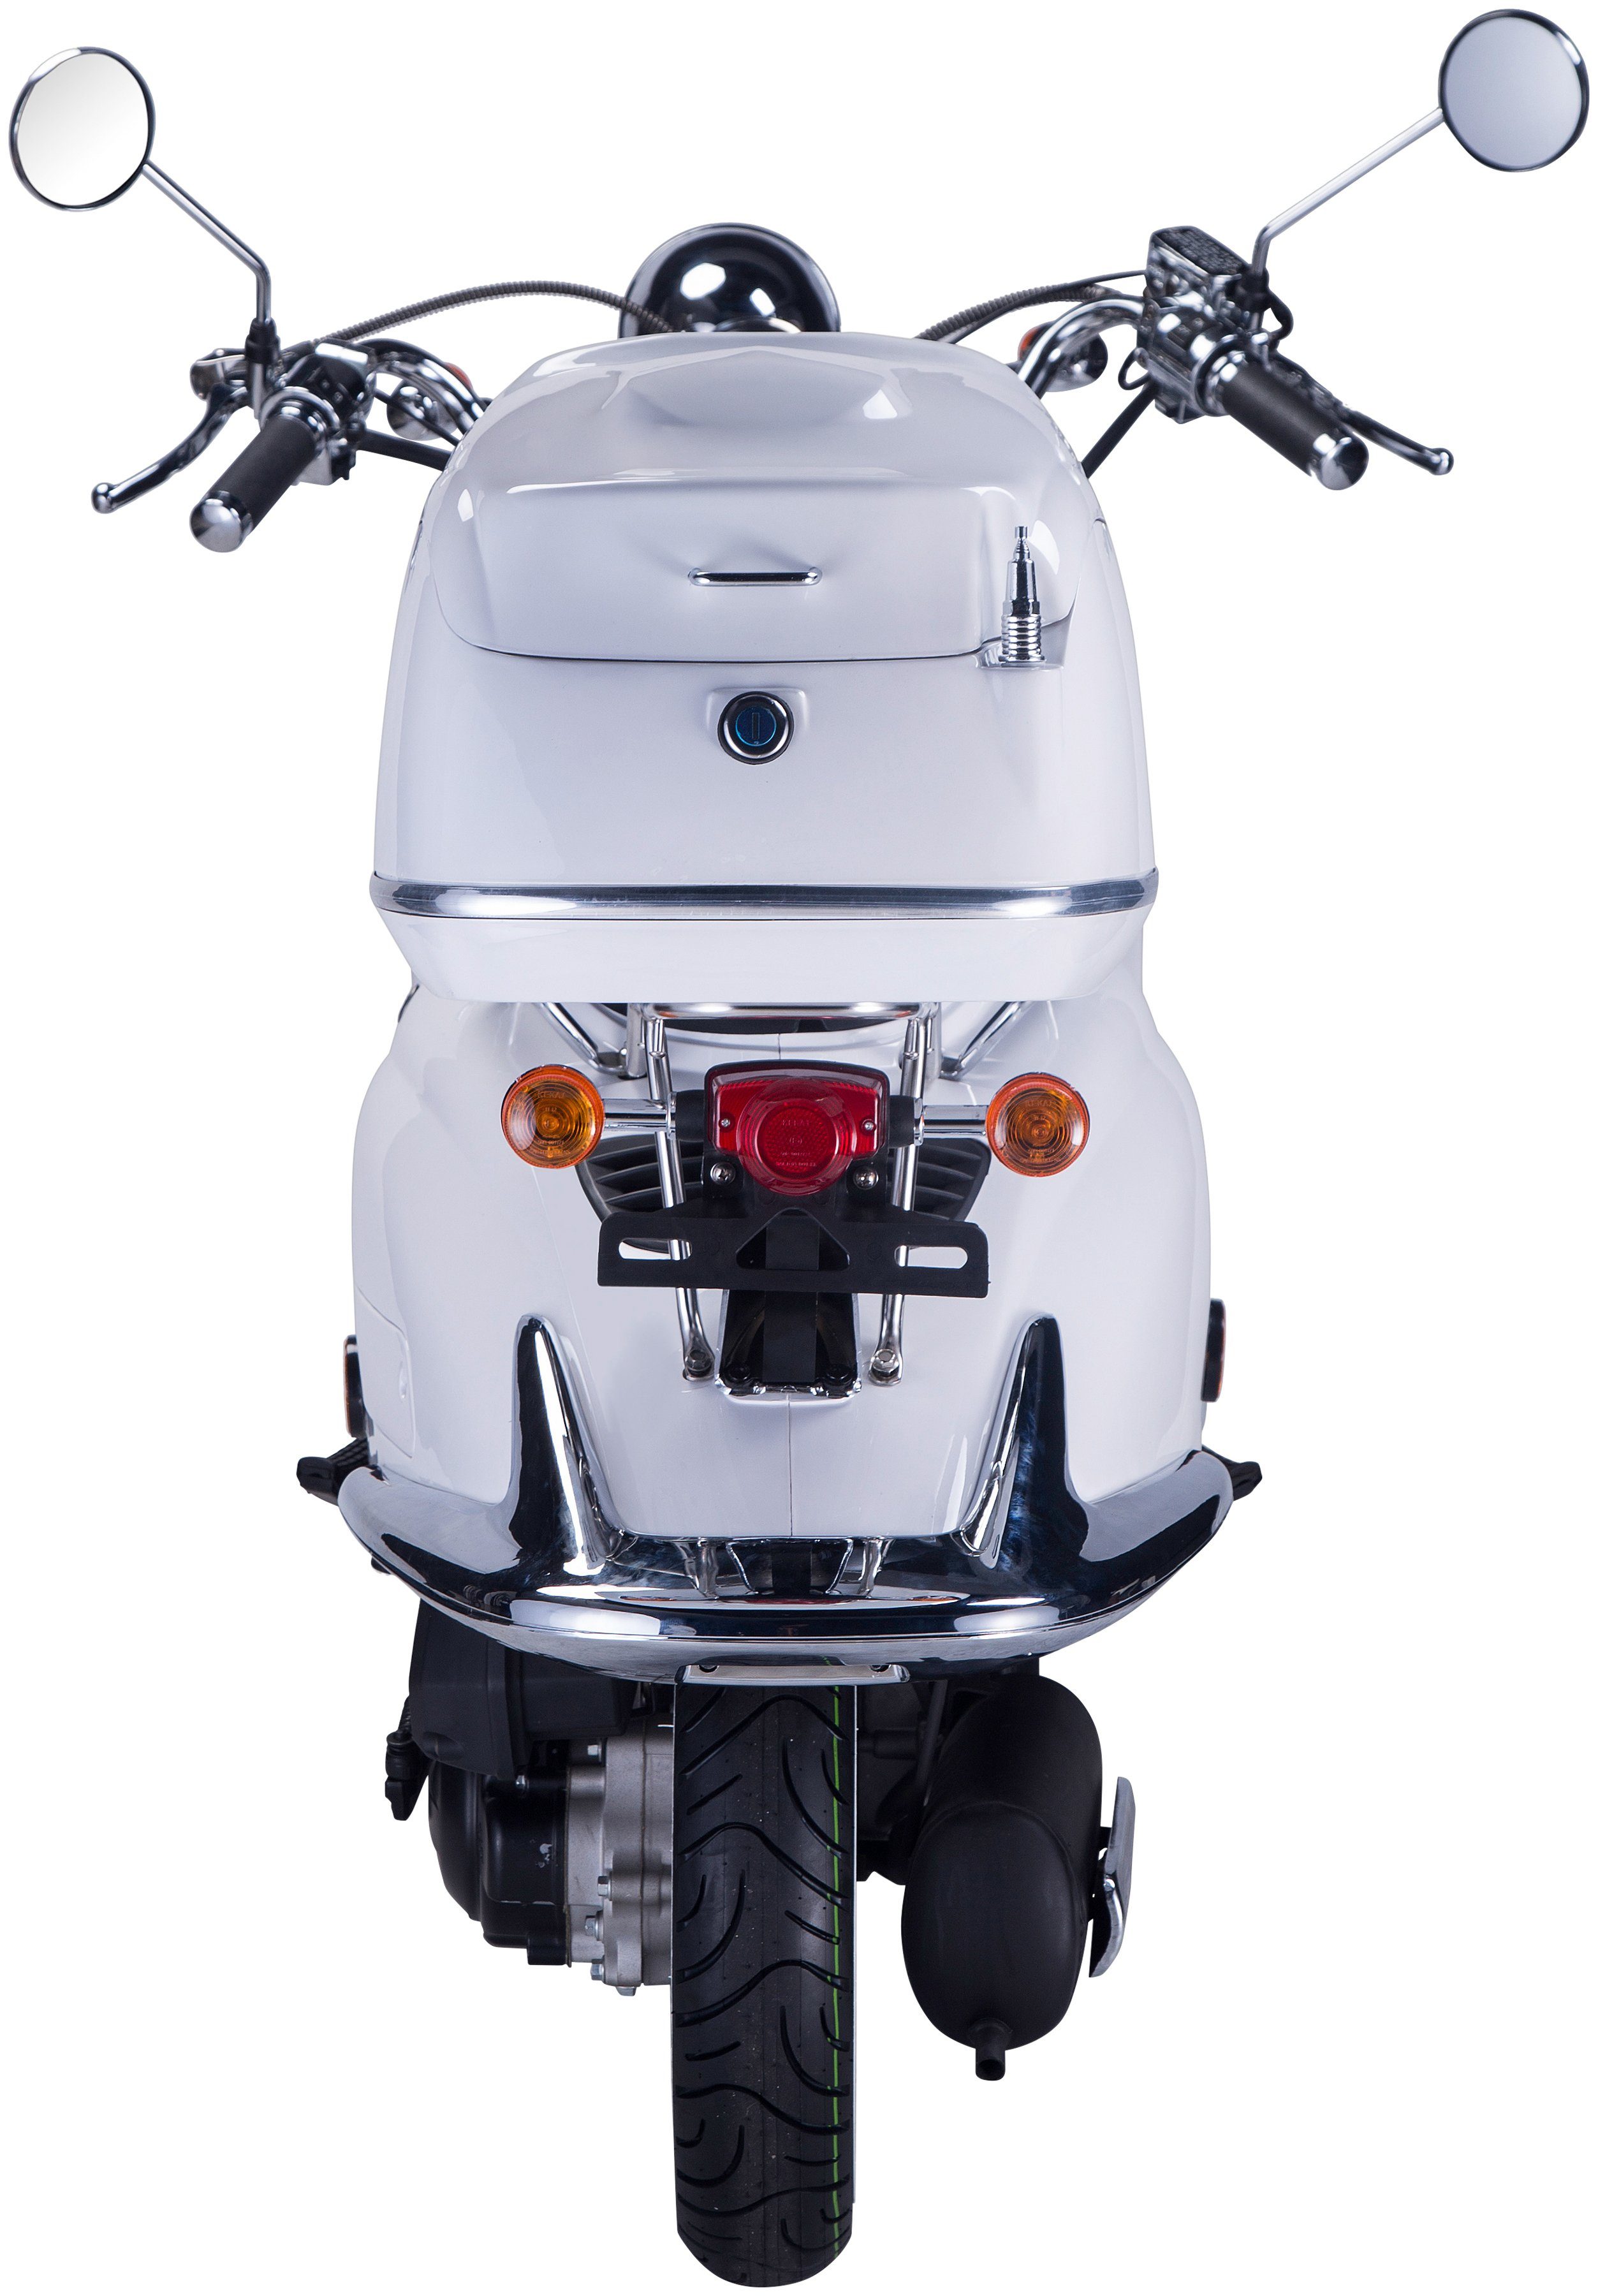 GT UNION 85 Strada, Motorroller weiß Topcase (Set), 5, ccm, Euro mit km/h, 125